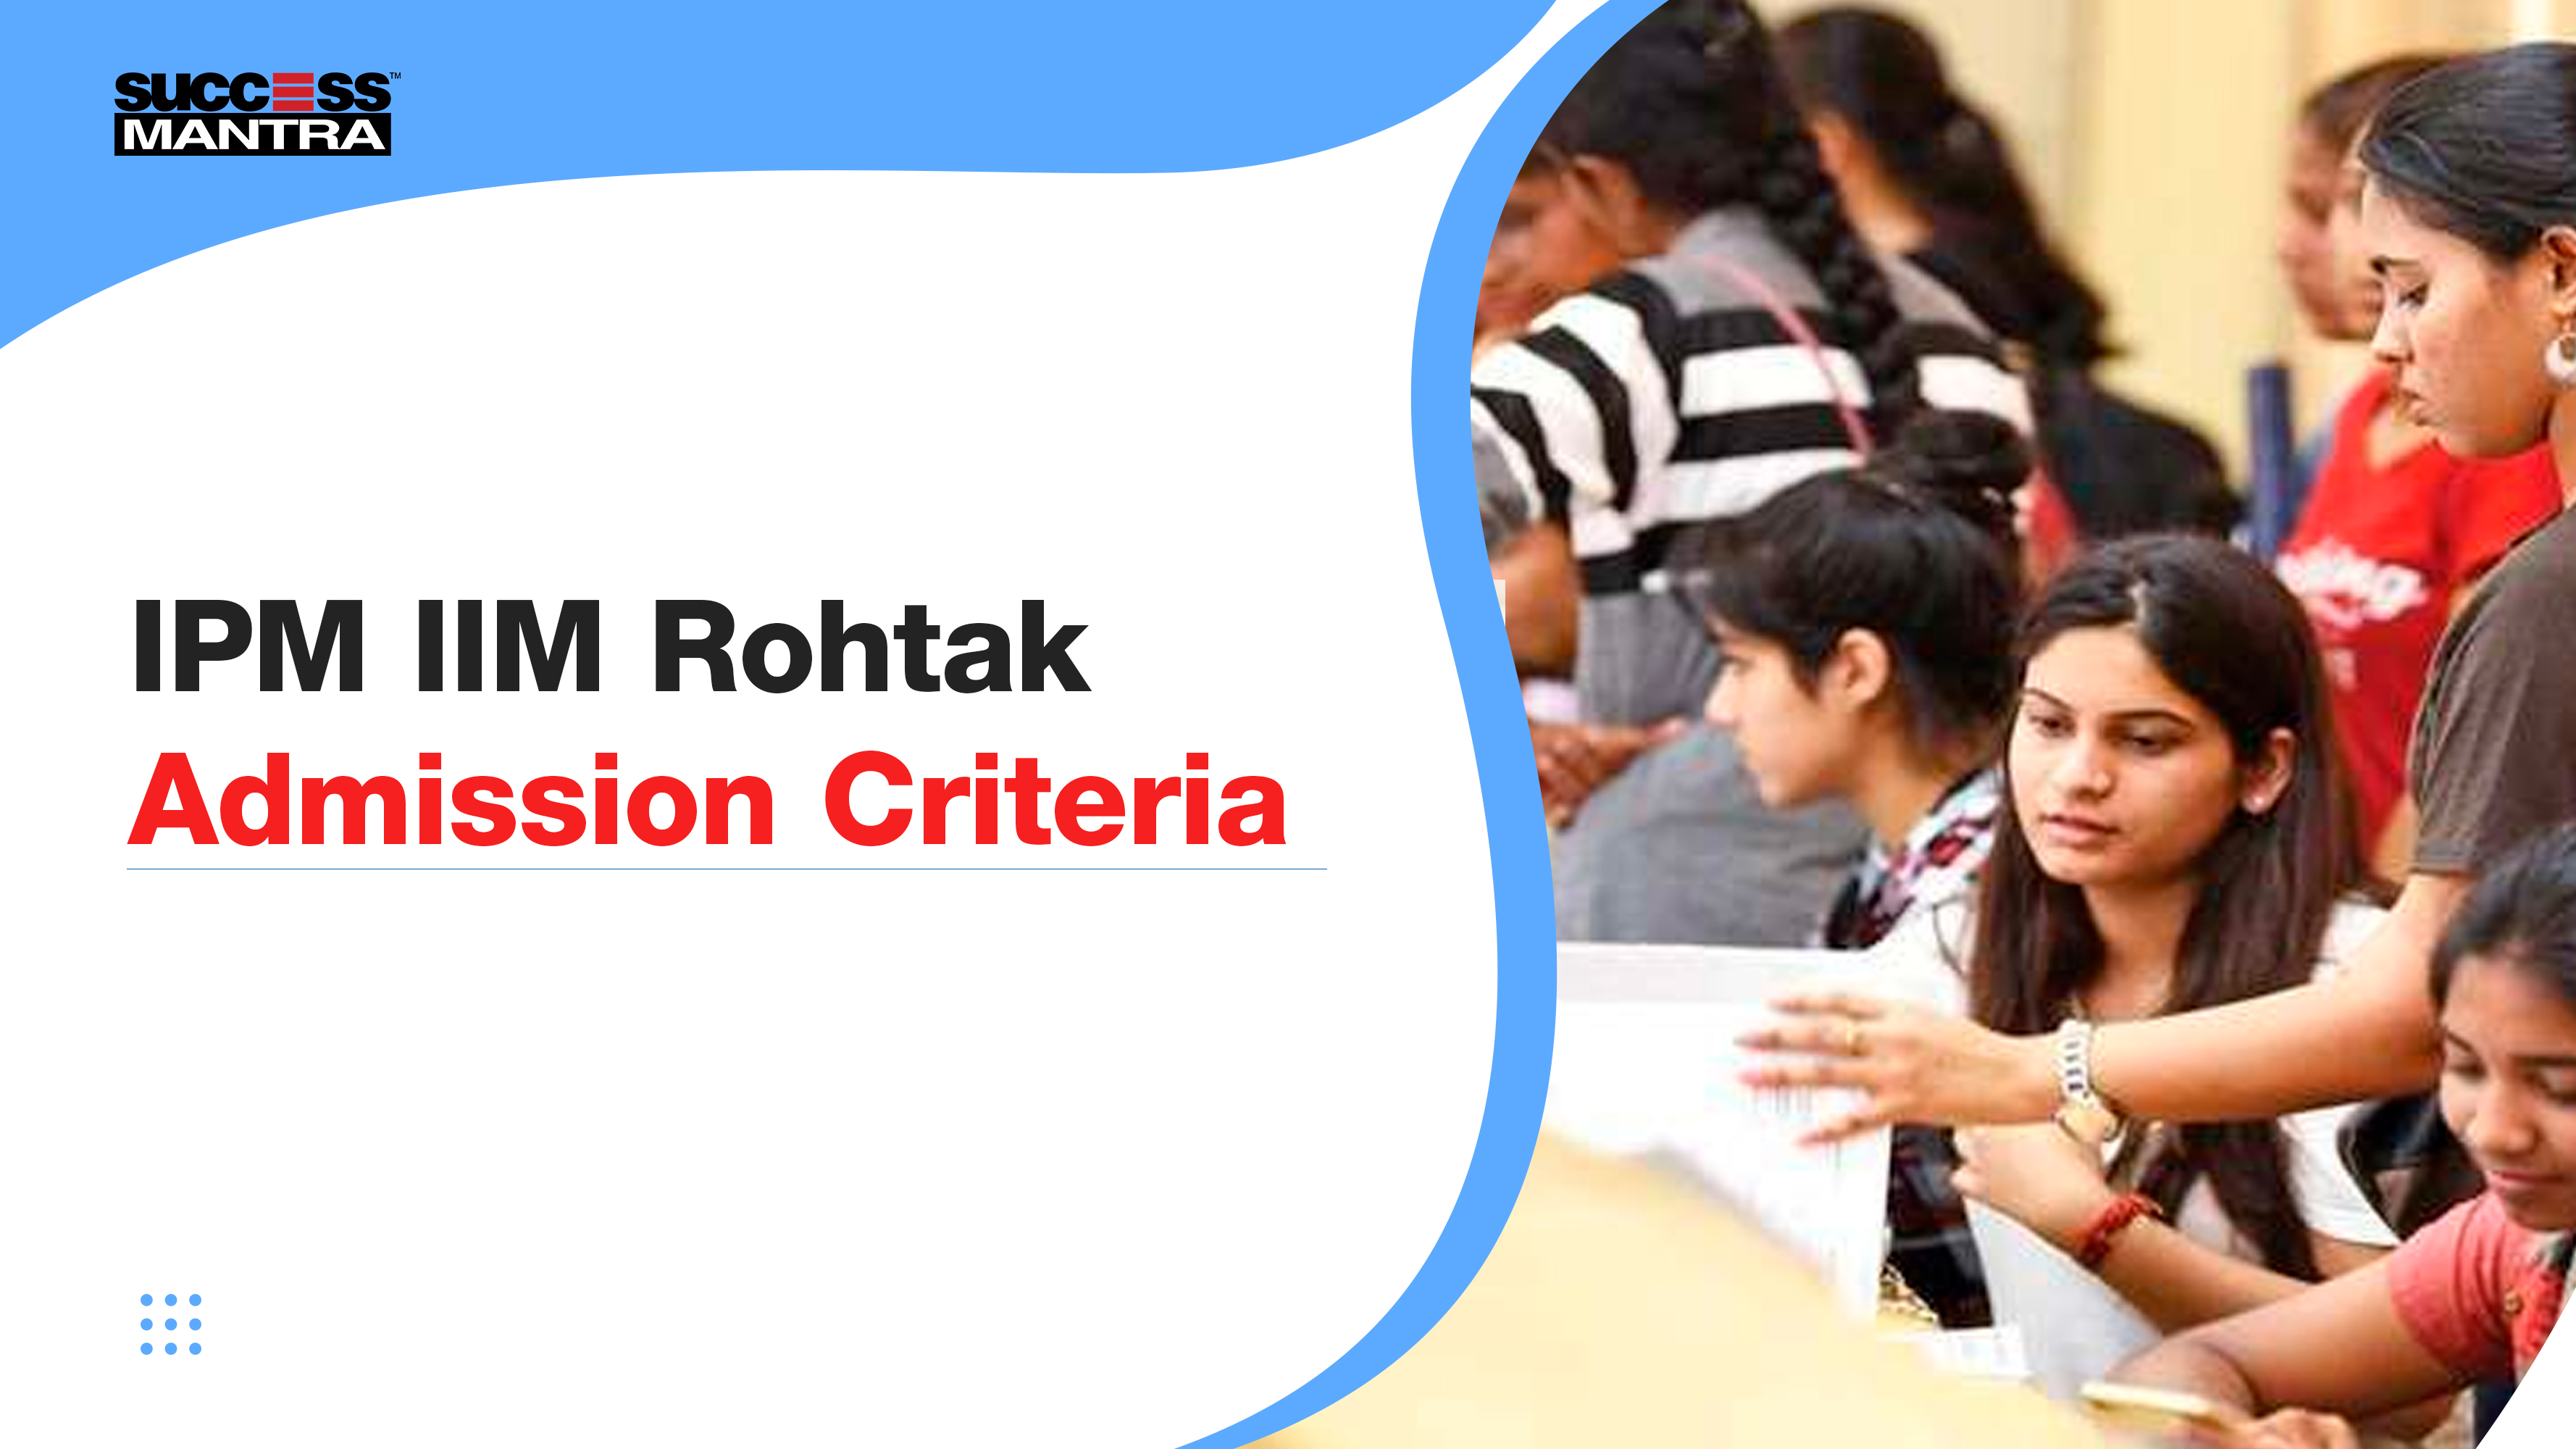 IPM IIM Rohtak Admission Criteria, Success Mantra Coaching Institute, Best Coaching Institute For BBA Located In GTB Nagar Delhi 